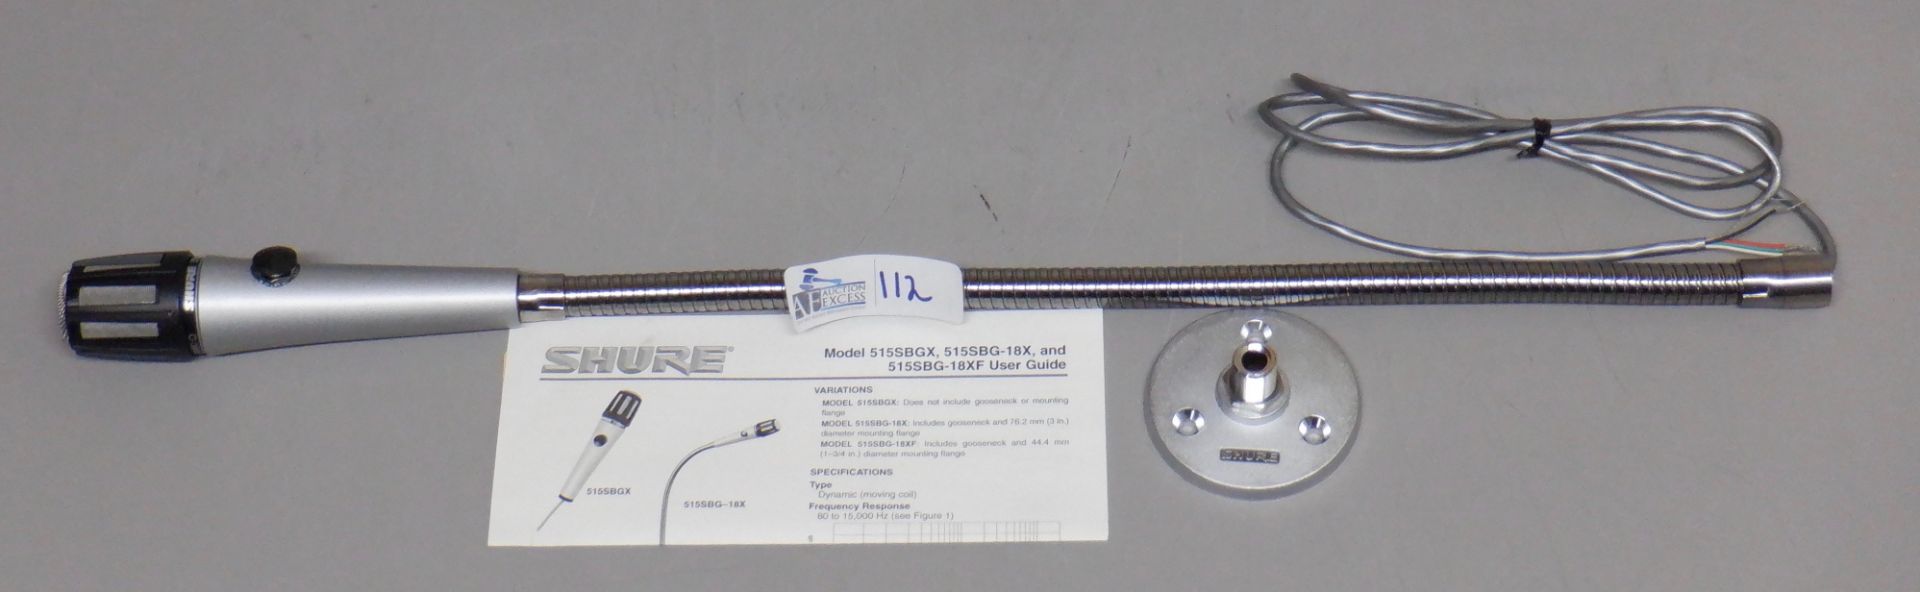 SHURE MIC 515SBG-18X IN ORIGINAL BOX - Image 3 of 6